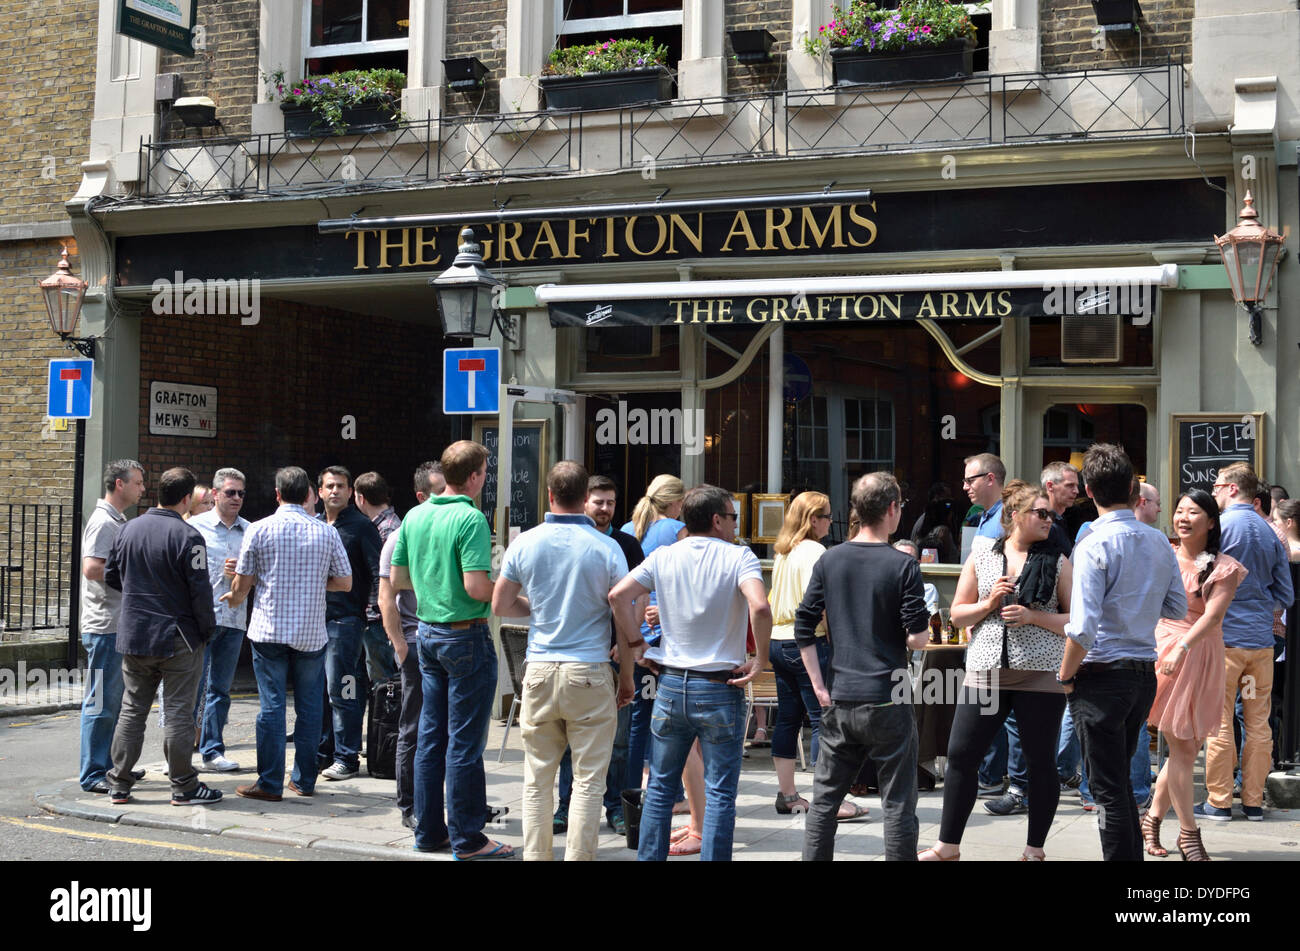 The Grafton Arms pub. Stock Photo